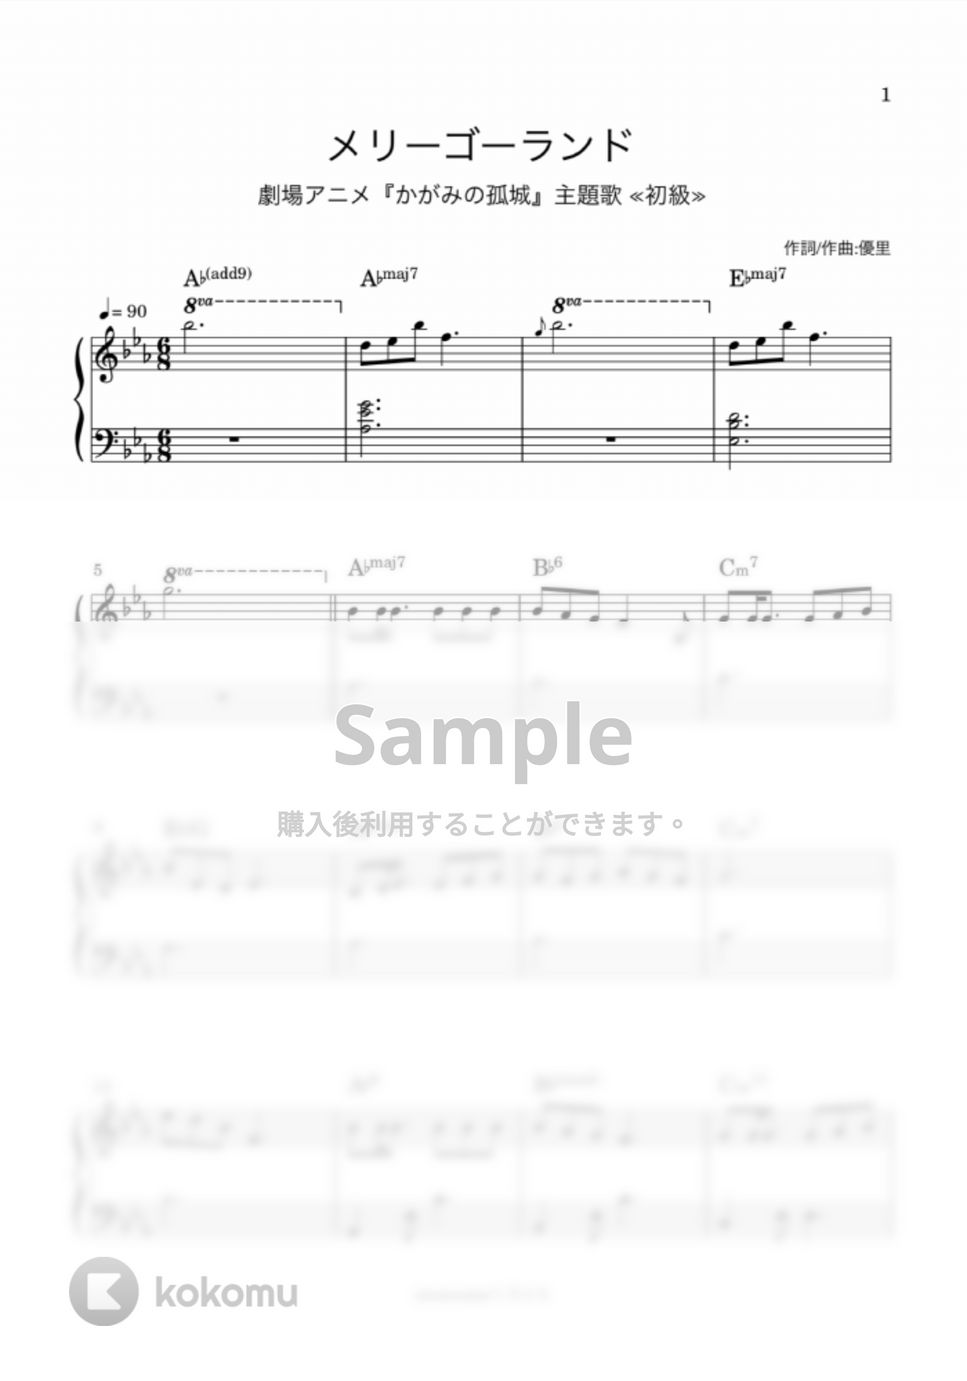 優里 - メリーゴーランド (ピアノソロ/初級/優里/かがみの孤城/主題歌) by utamenma/くろとも